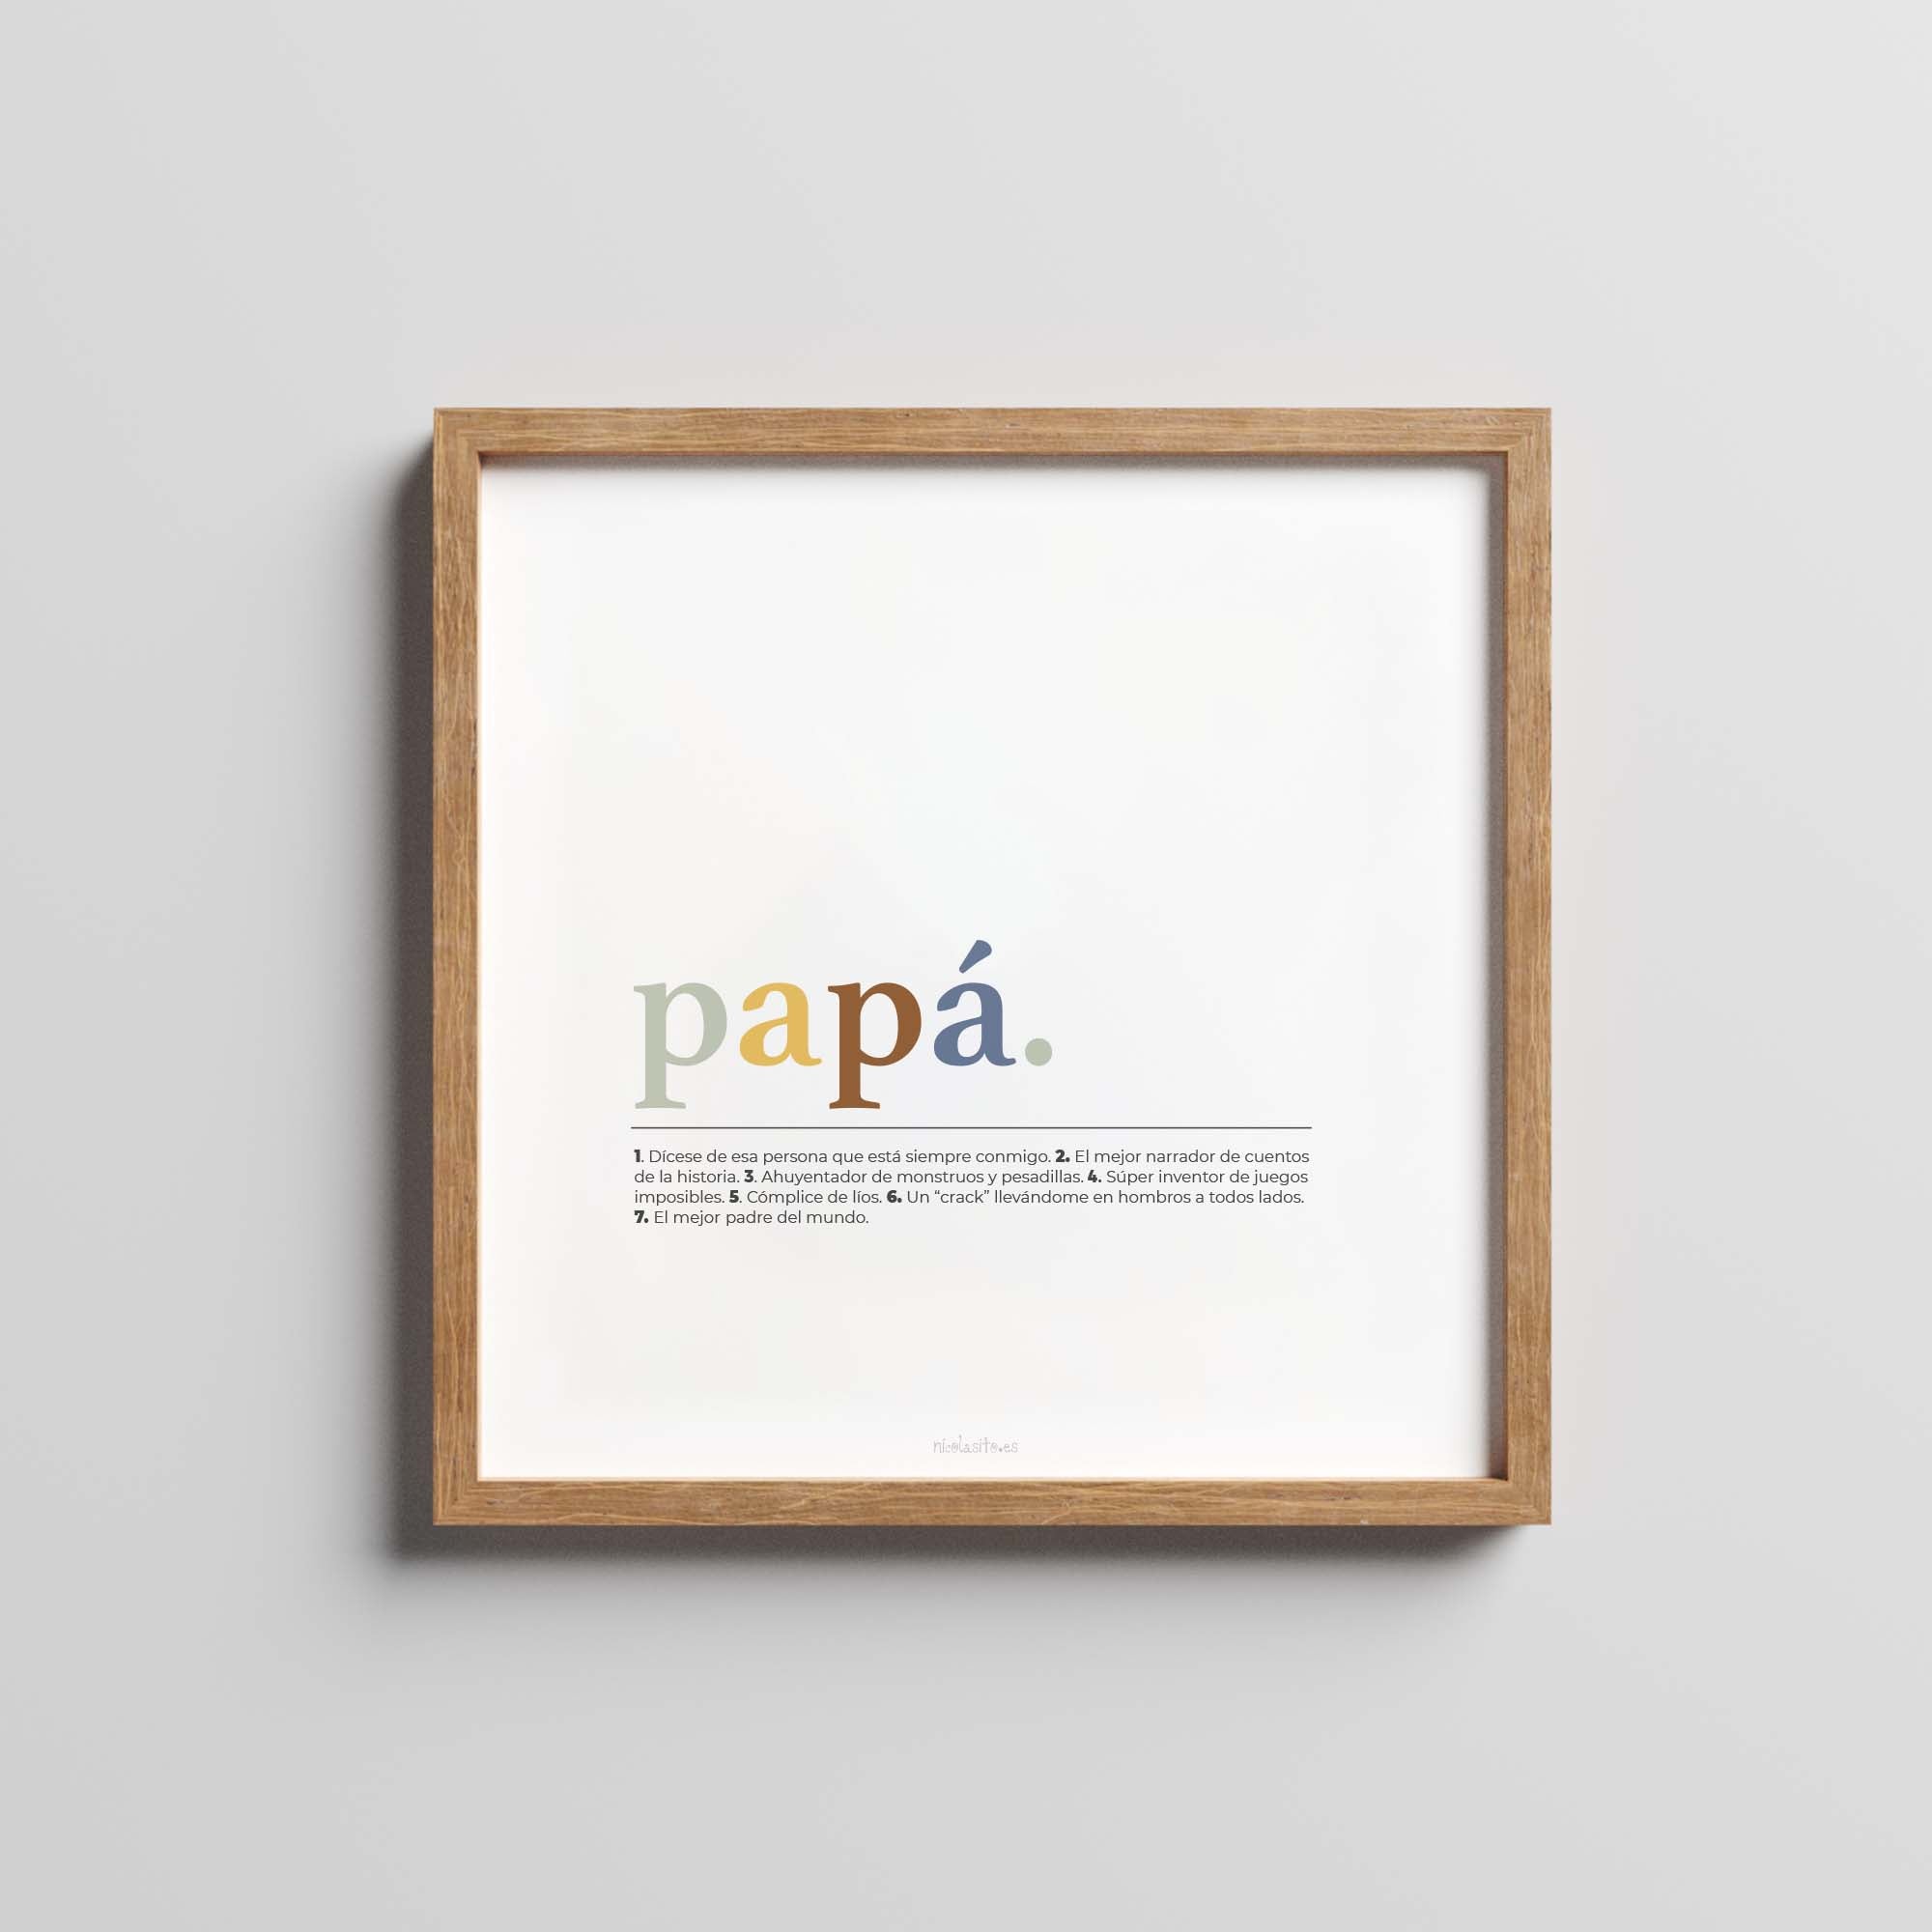 ideas de regalos originales para regalar a papá el día del padre #Tamaño_23x23 cm